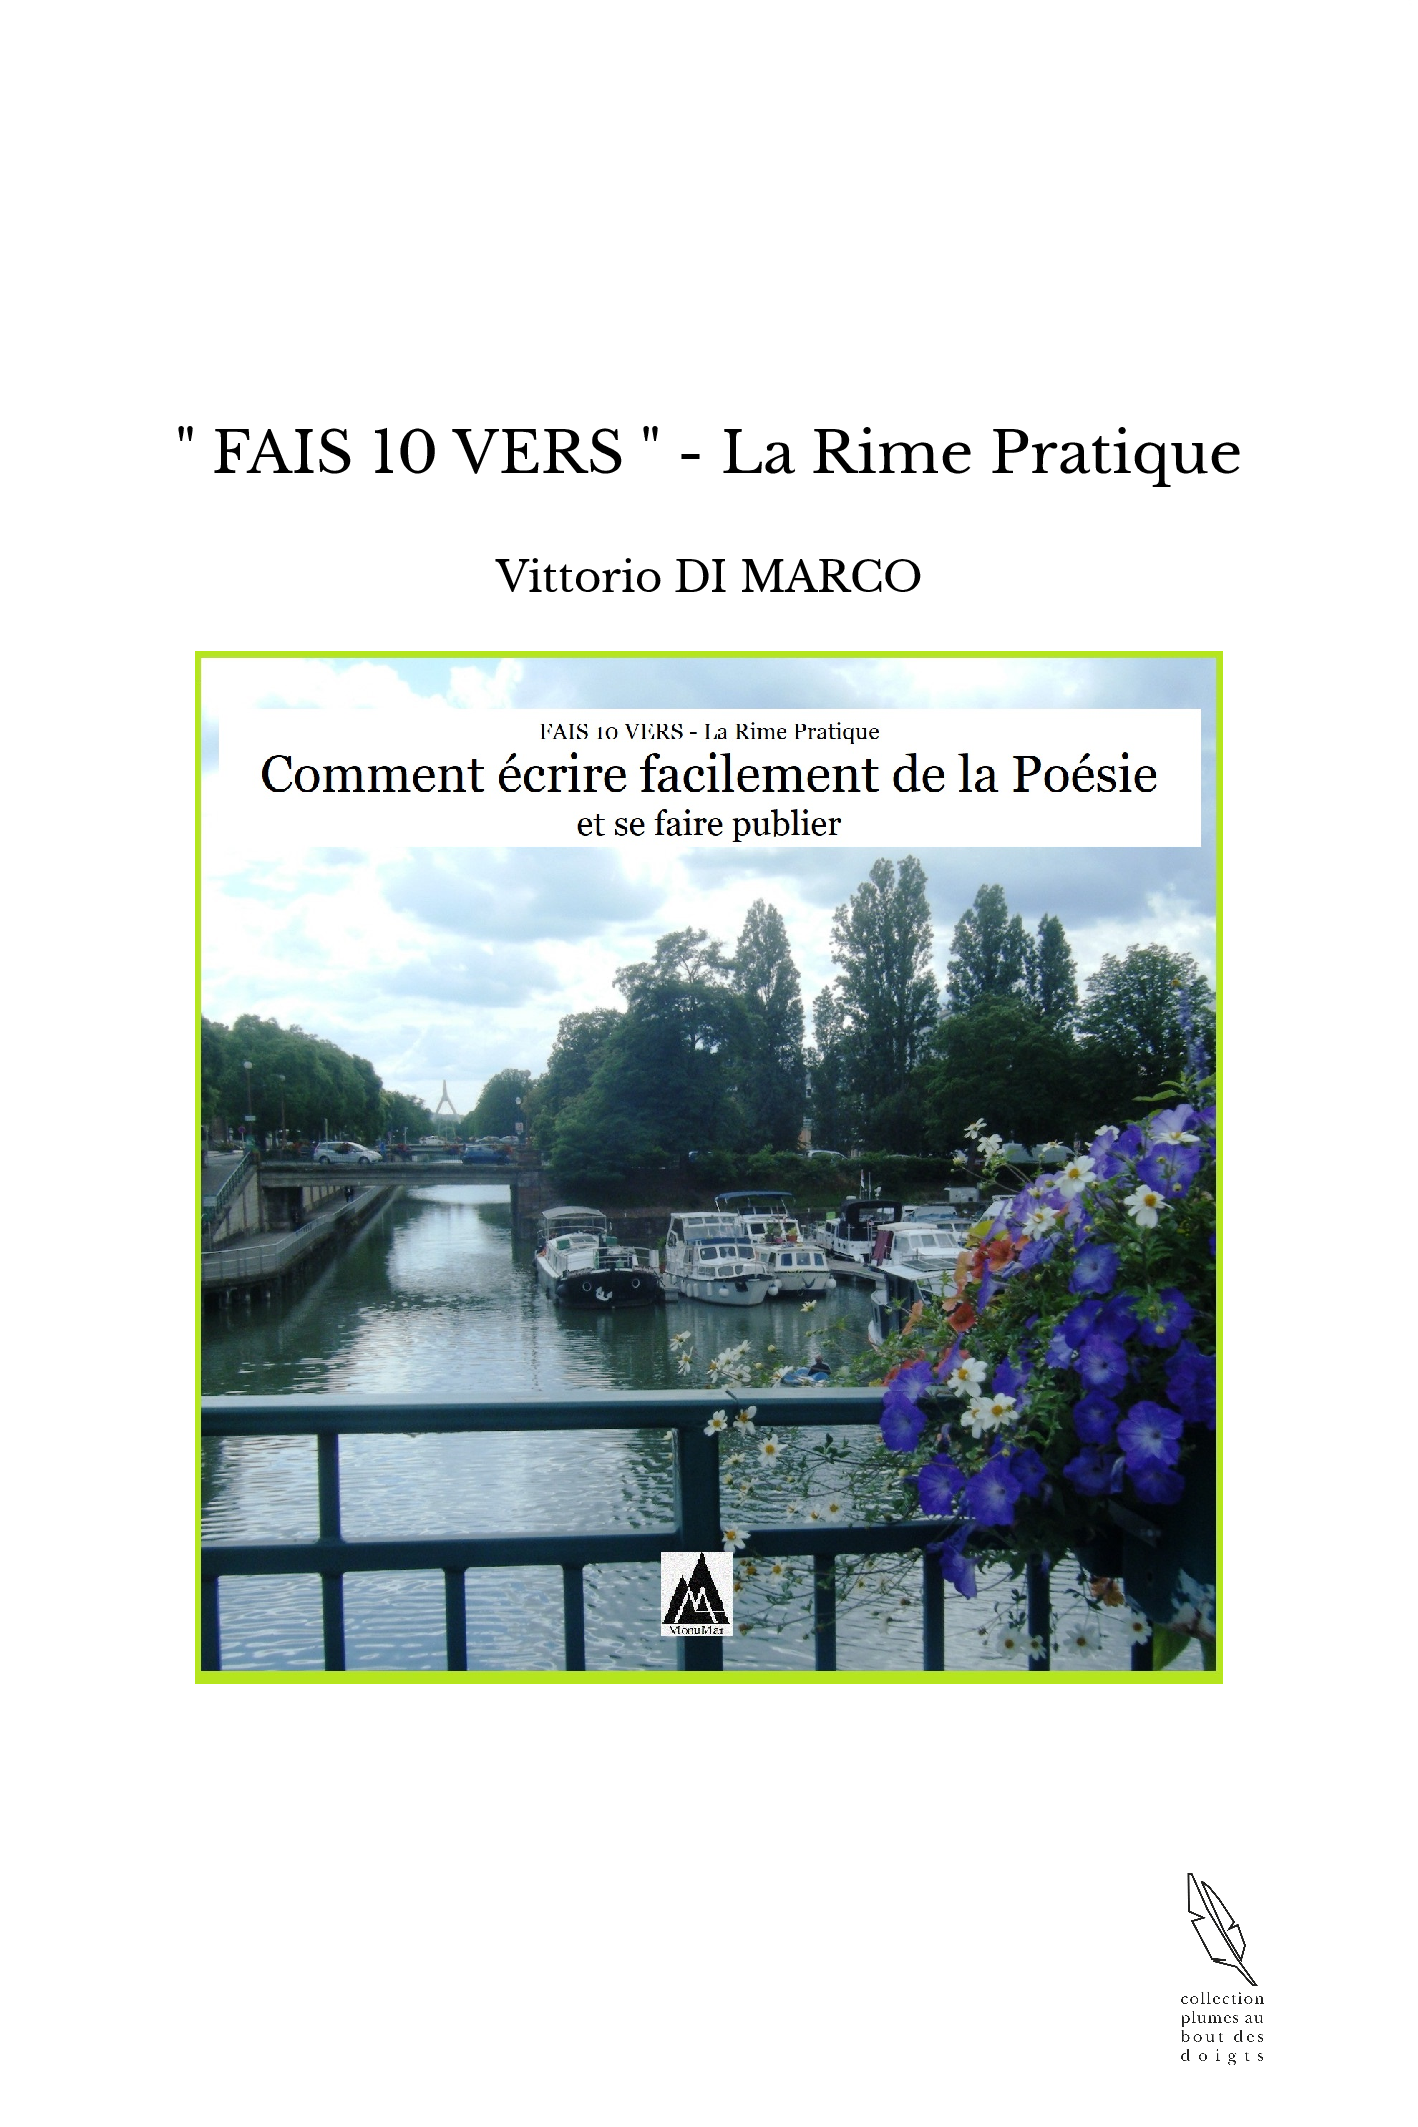 " FAIS 10 VERS " - La Rime Pratique